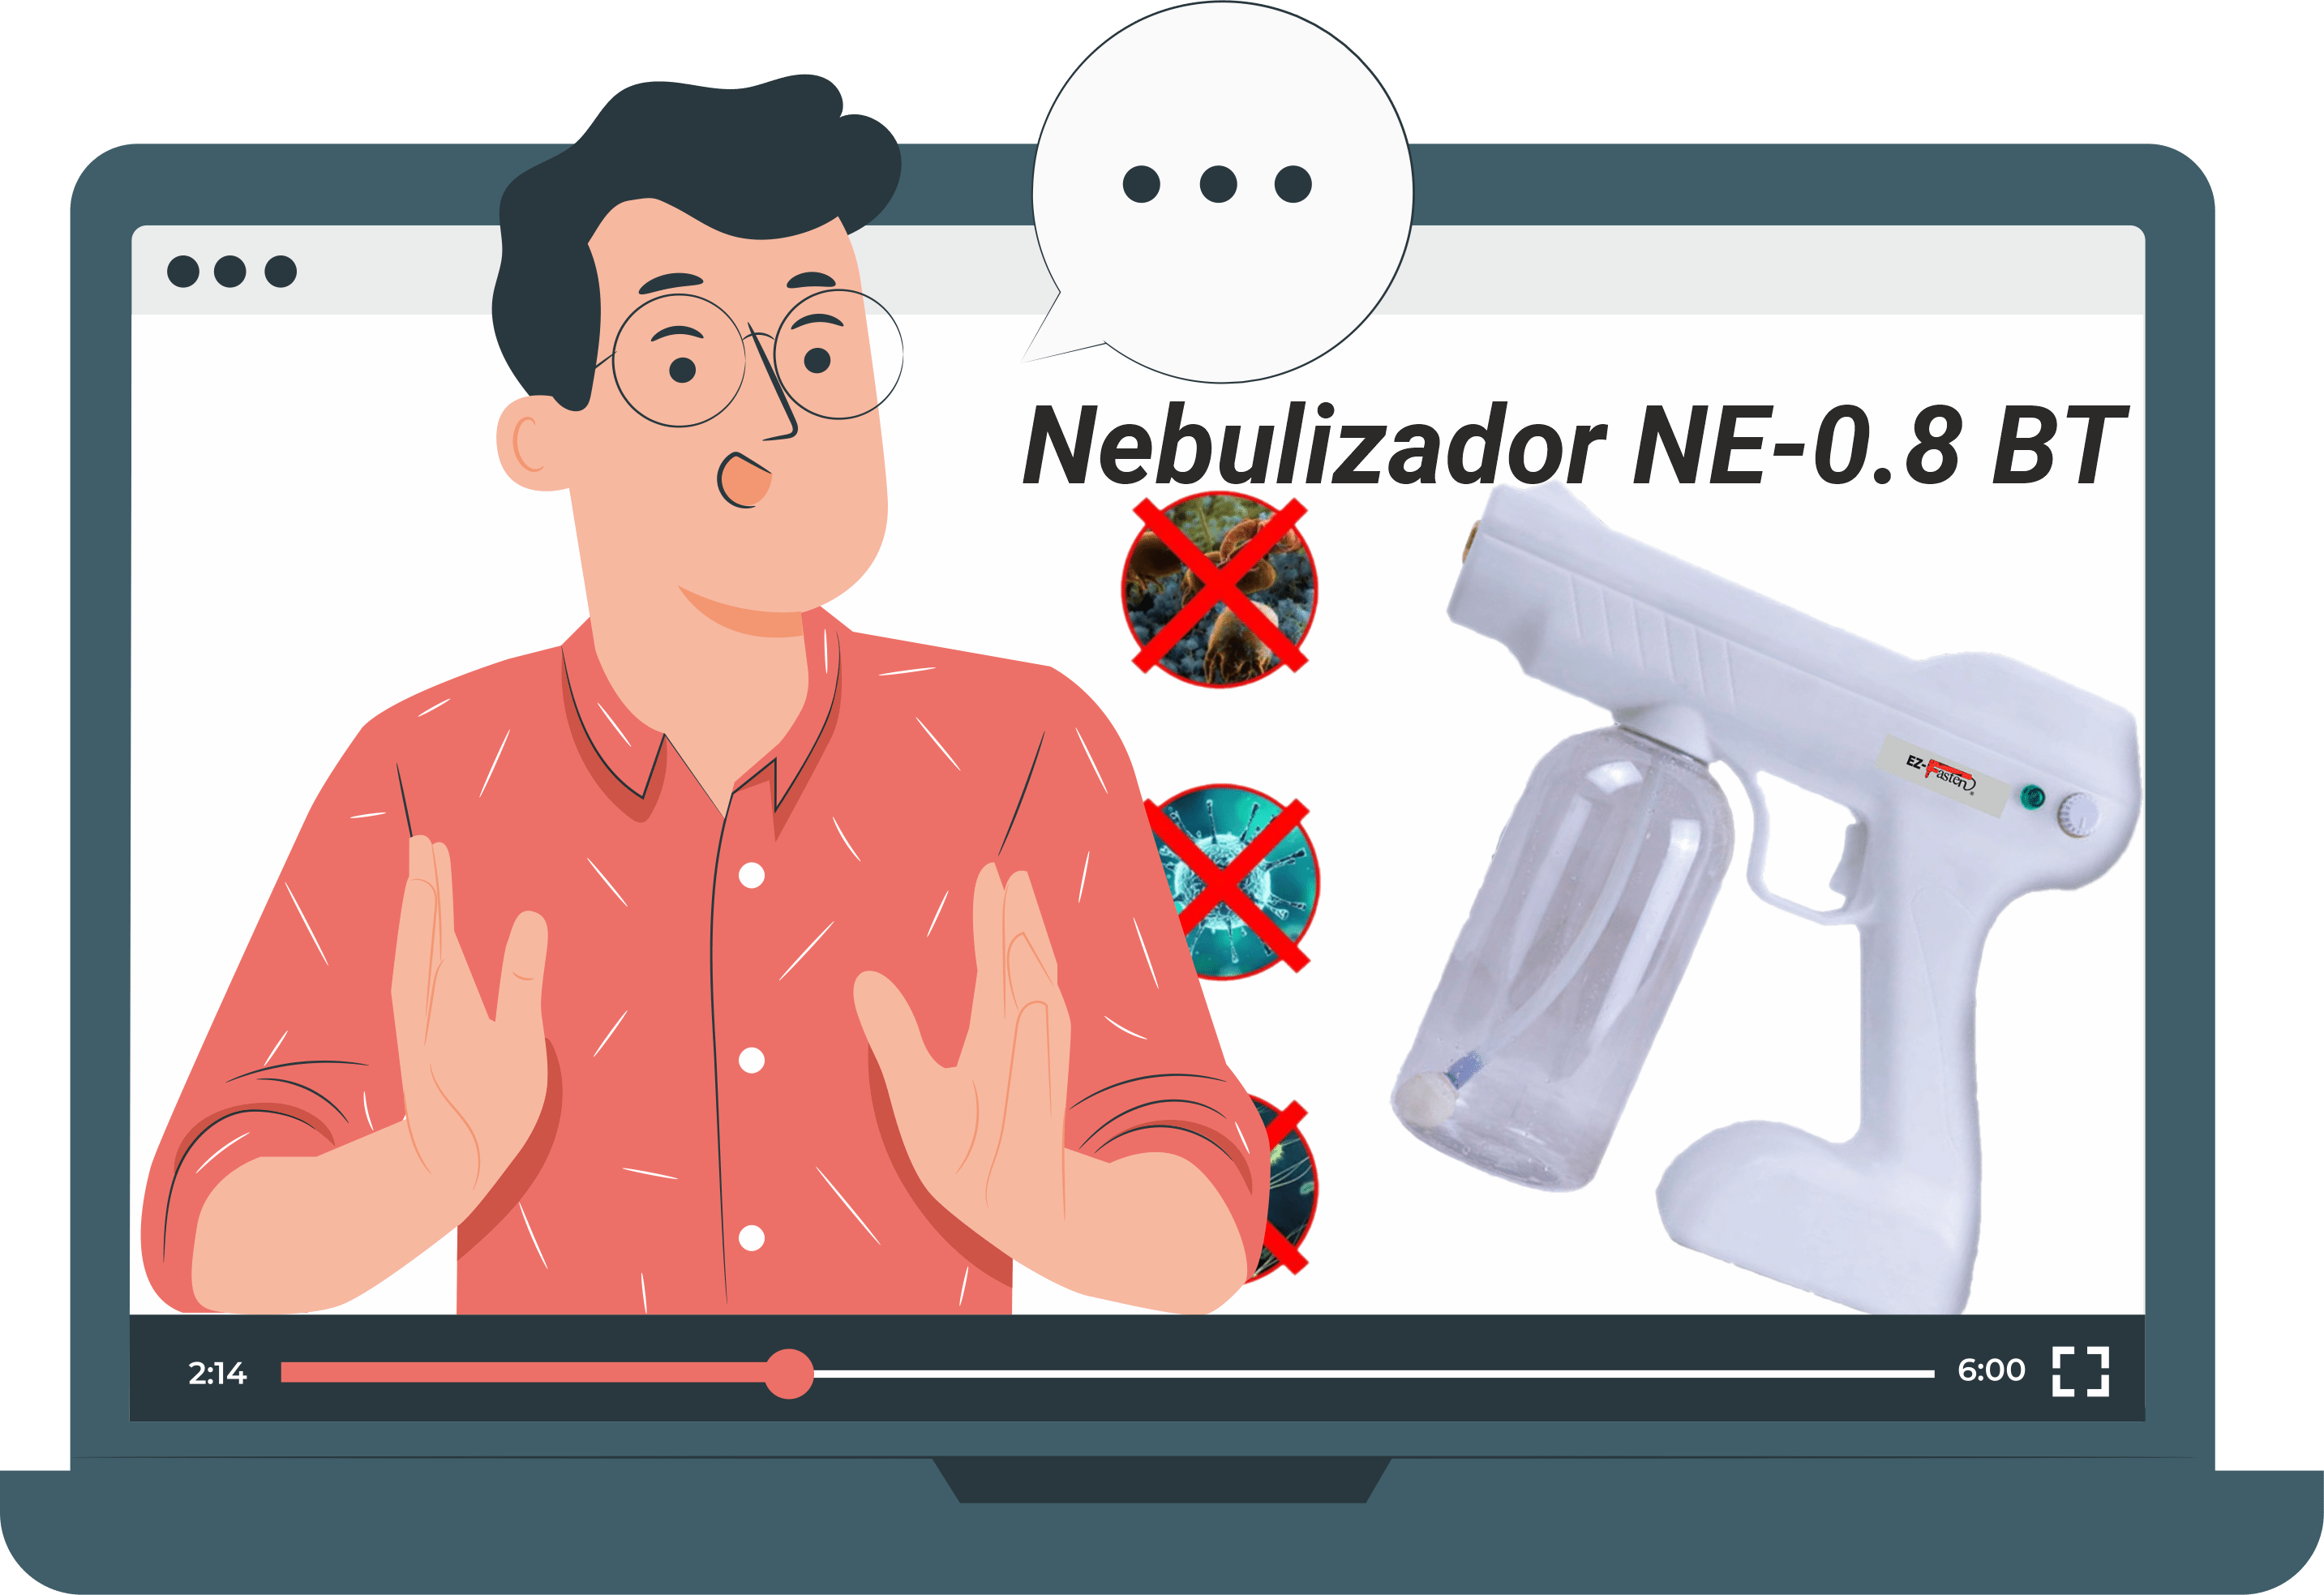 Nebulizador NR-0.8 BT